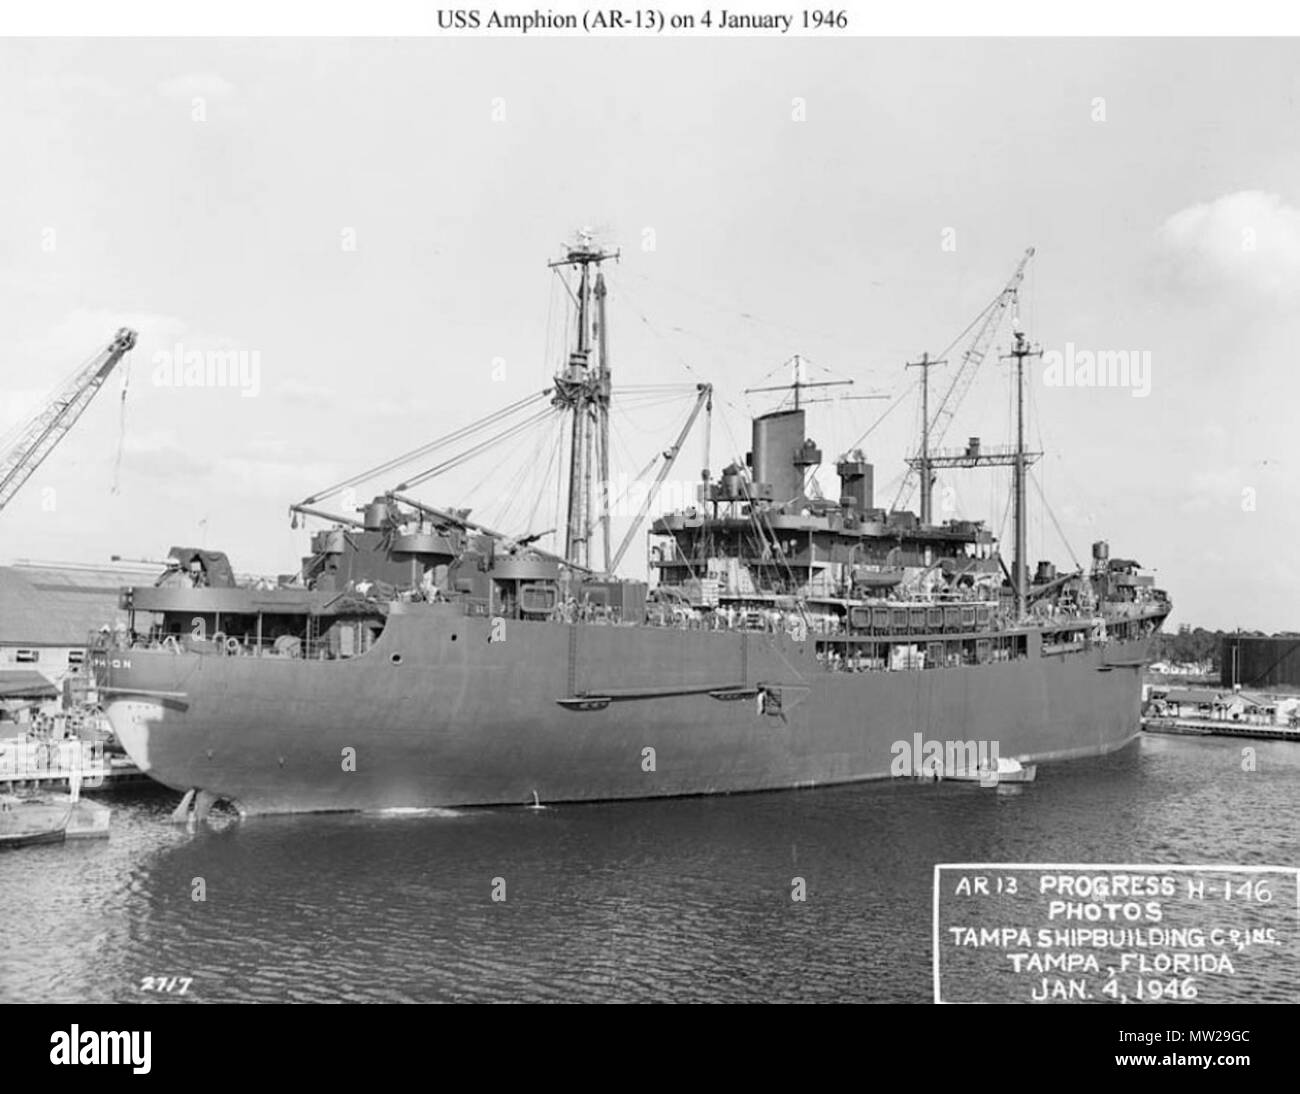 . Englisch: Amphion (AR-13) Herrichtung in Tampa Bay Shipbuilding Co, Tampa, FL., 4. Januar 1946, etwa zwei Wochen vor der Inbetriebnahme am 20. Januar 1946. US National Archives. Foto #unbekannt, RG-19 - LCM, ein US-Marine Büro der Schiffe Foto jetzt in den Sammlungen des US National Archives. 4. Januar 1946. US Navy Büro der Schiffe 622 USS Amphion 1. Stockfoto